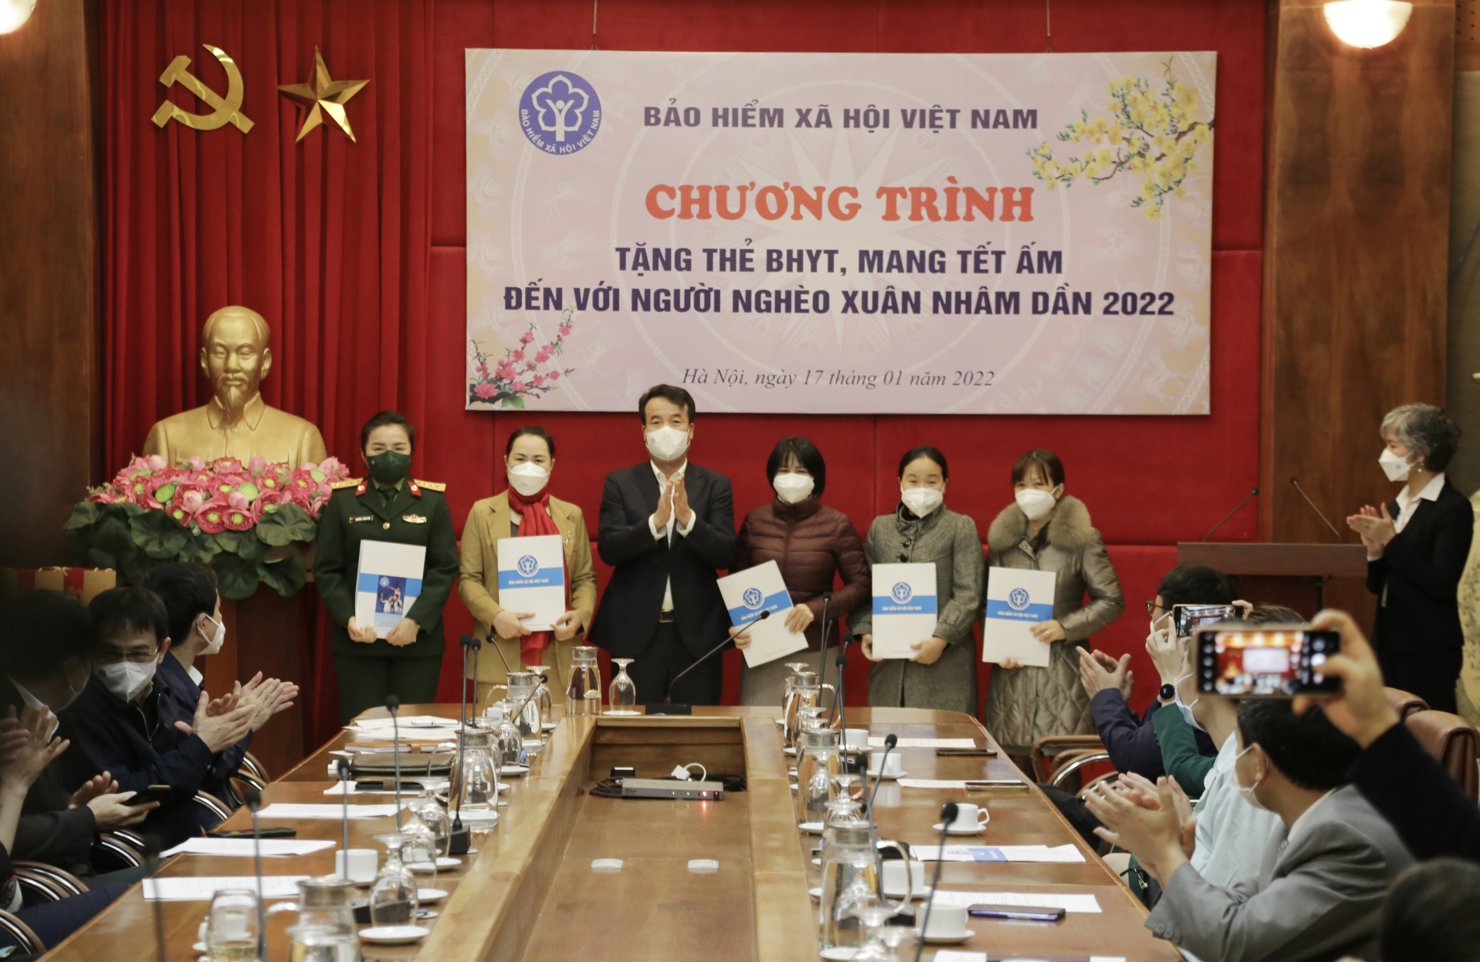 Tổng Giám đốc BHXH Việt Nam Nguyễn Thế Mạnh trao tặng các phần quà cho đại diện các phòng công tác xã hội tại các bệnh viện tuyến trung ương nhận các phần quà từ Chương trình để gửi đến các bệnh nhân.